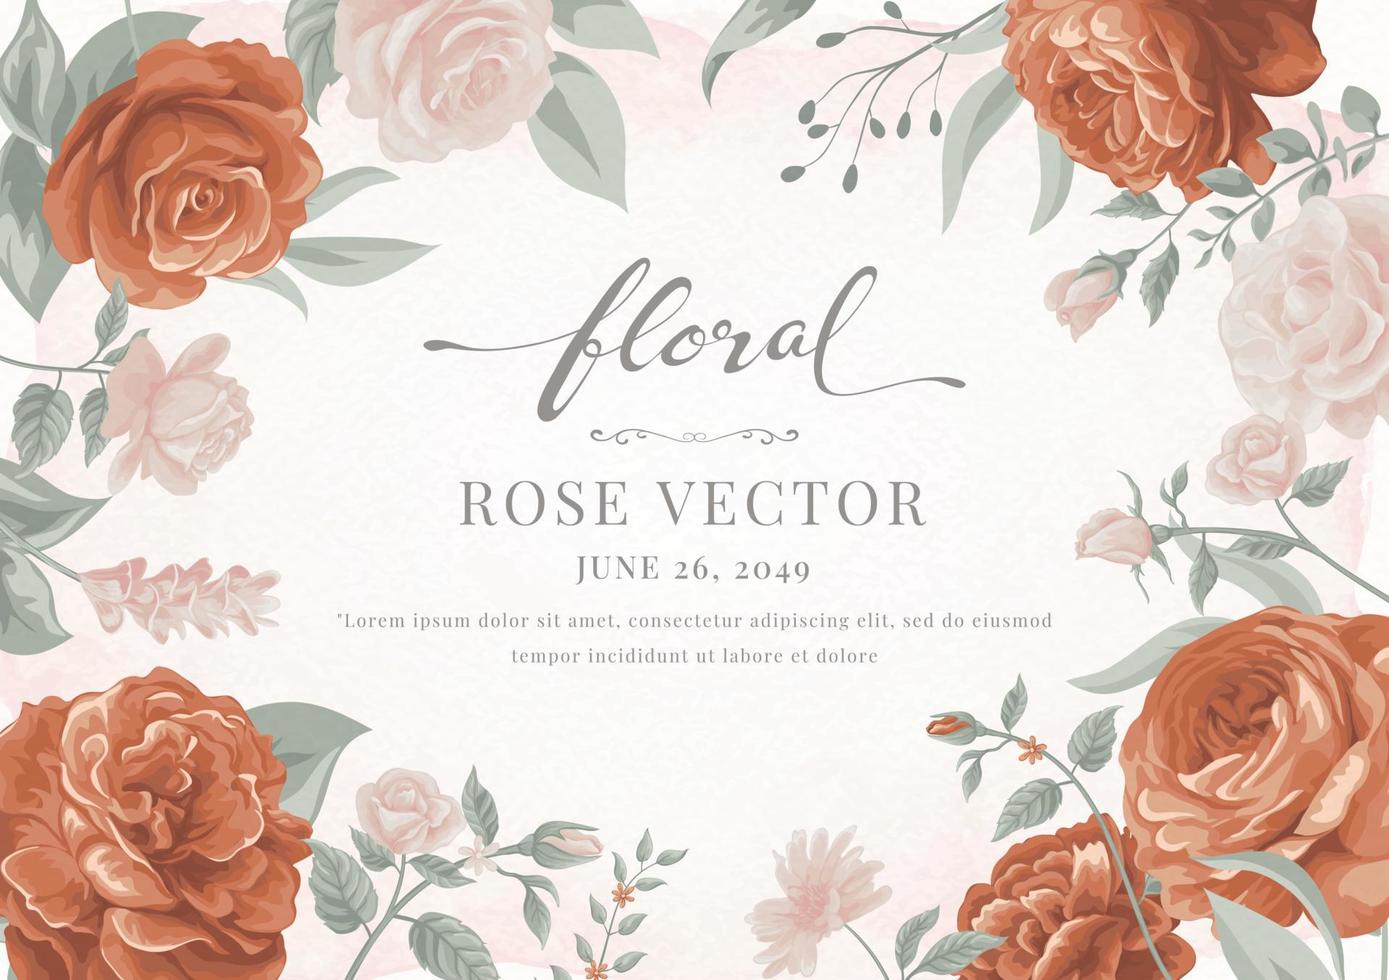 Digital gemalte Illustration der schönen Rosenblume und des botanischen Blattes für Liebeshochzeits-Valentinstag oder Anordnungseinladungsdesign-Grußkarte vektor